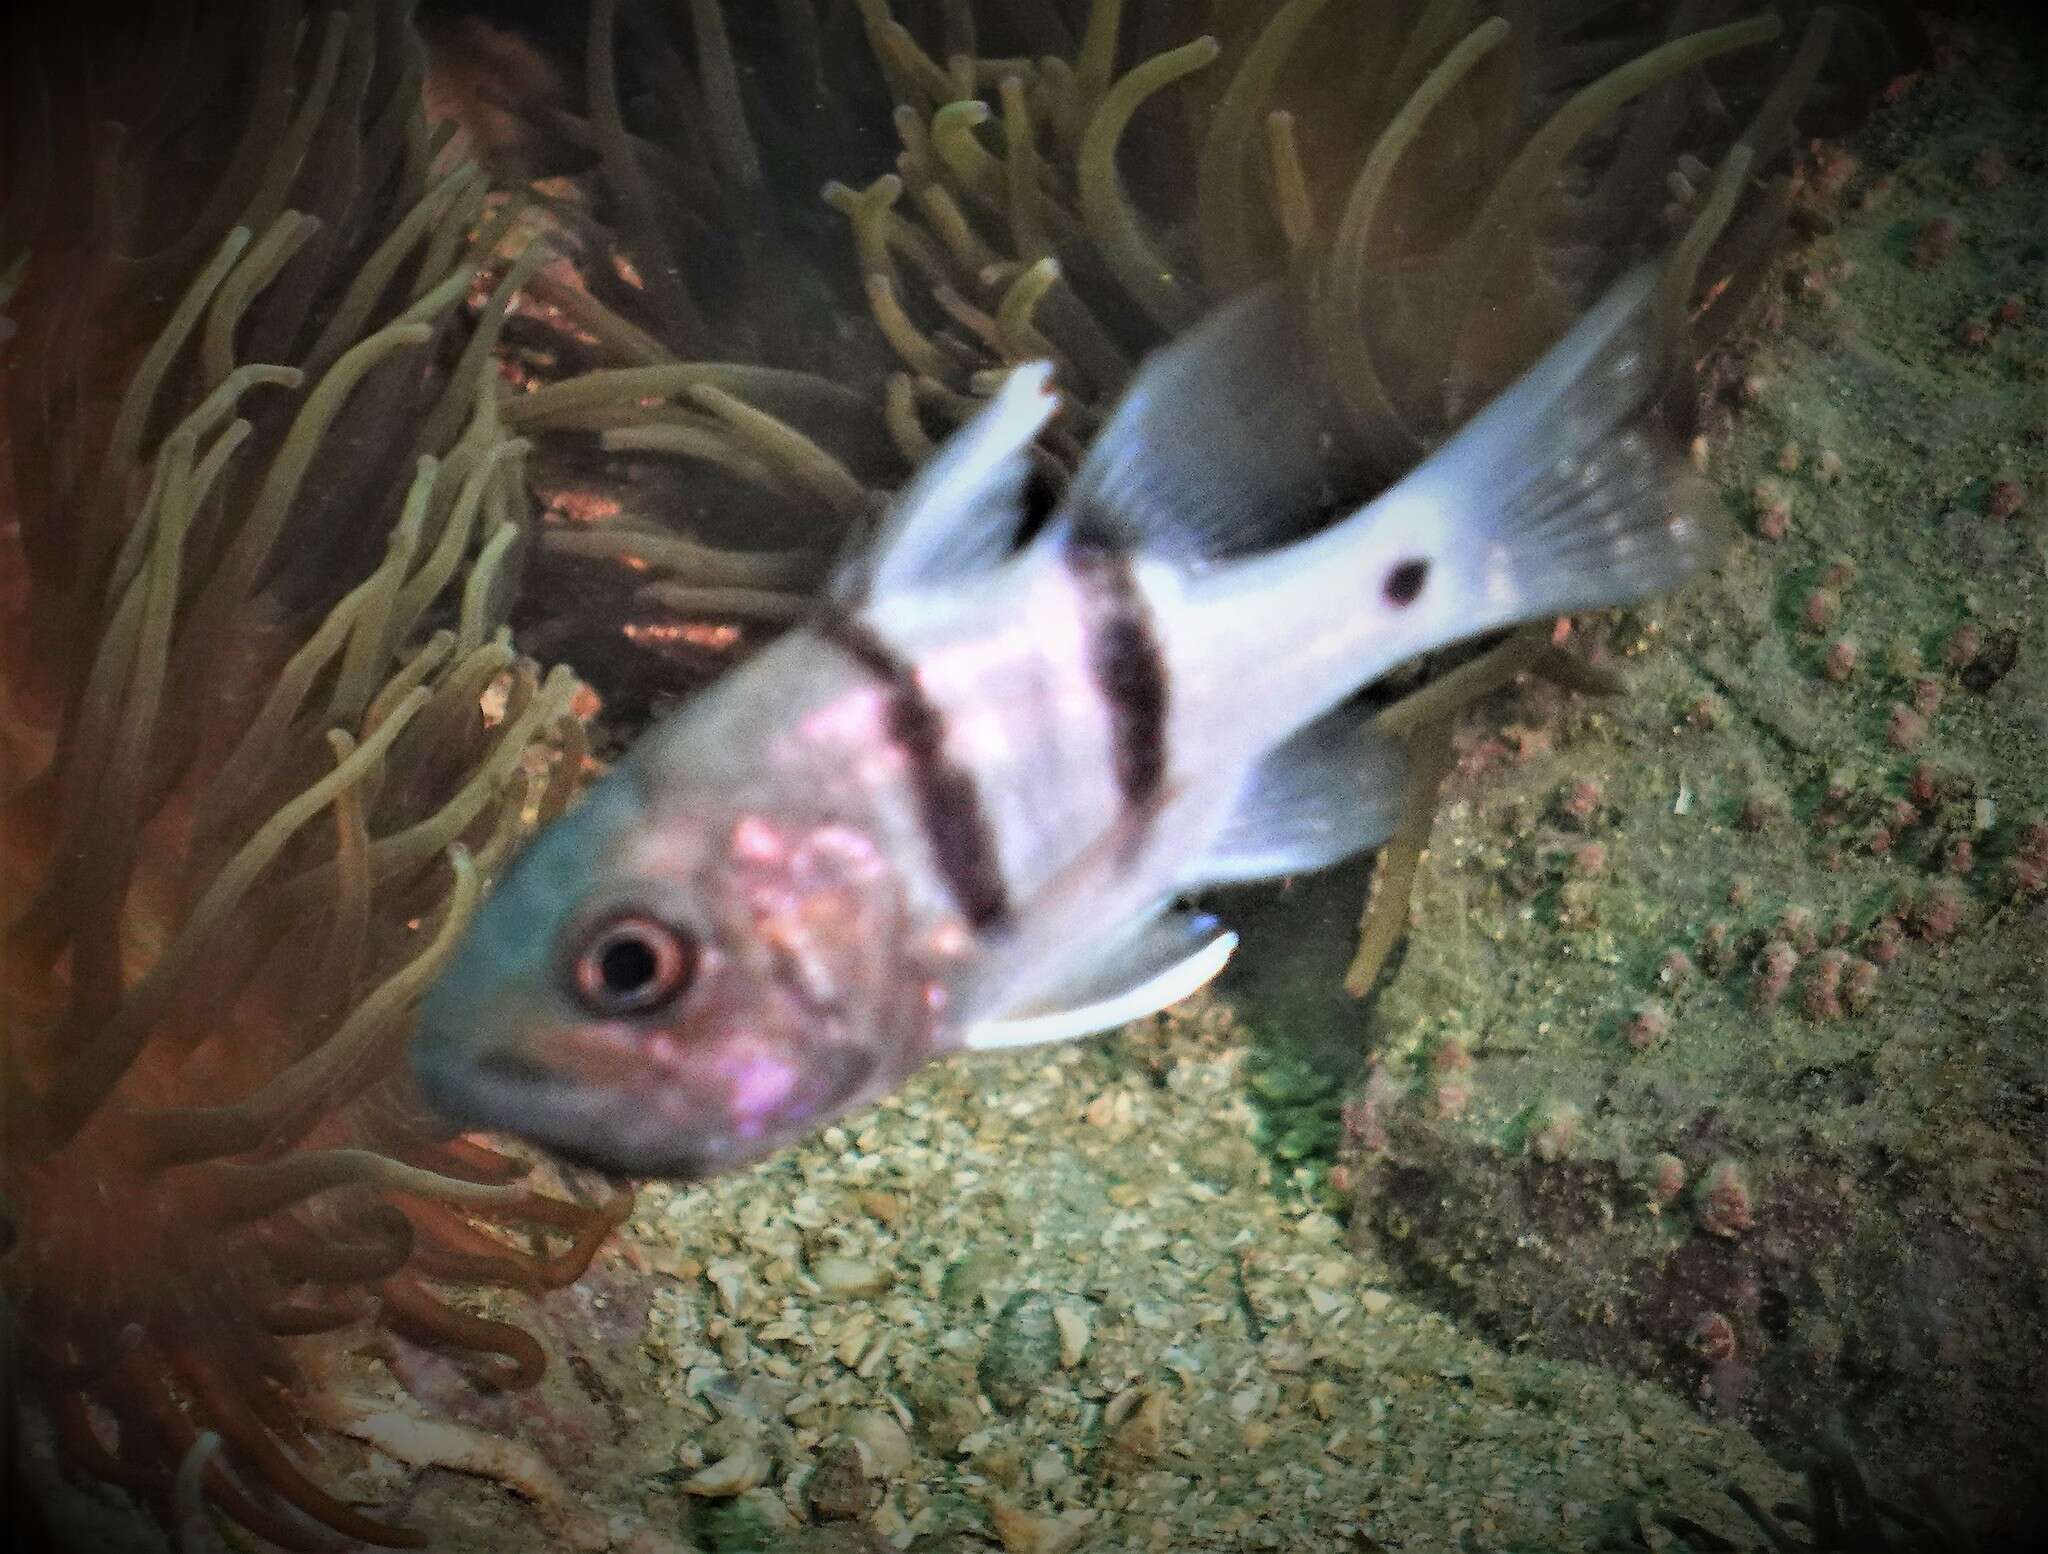 Image of Cardinalfish